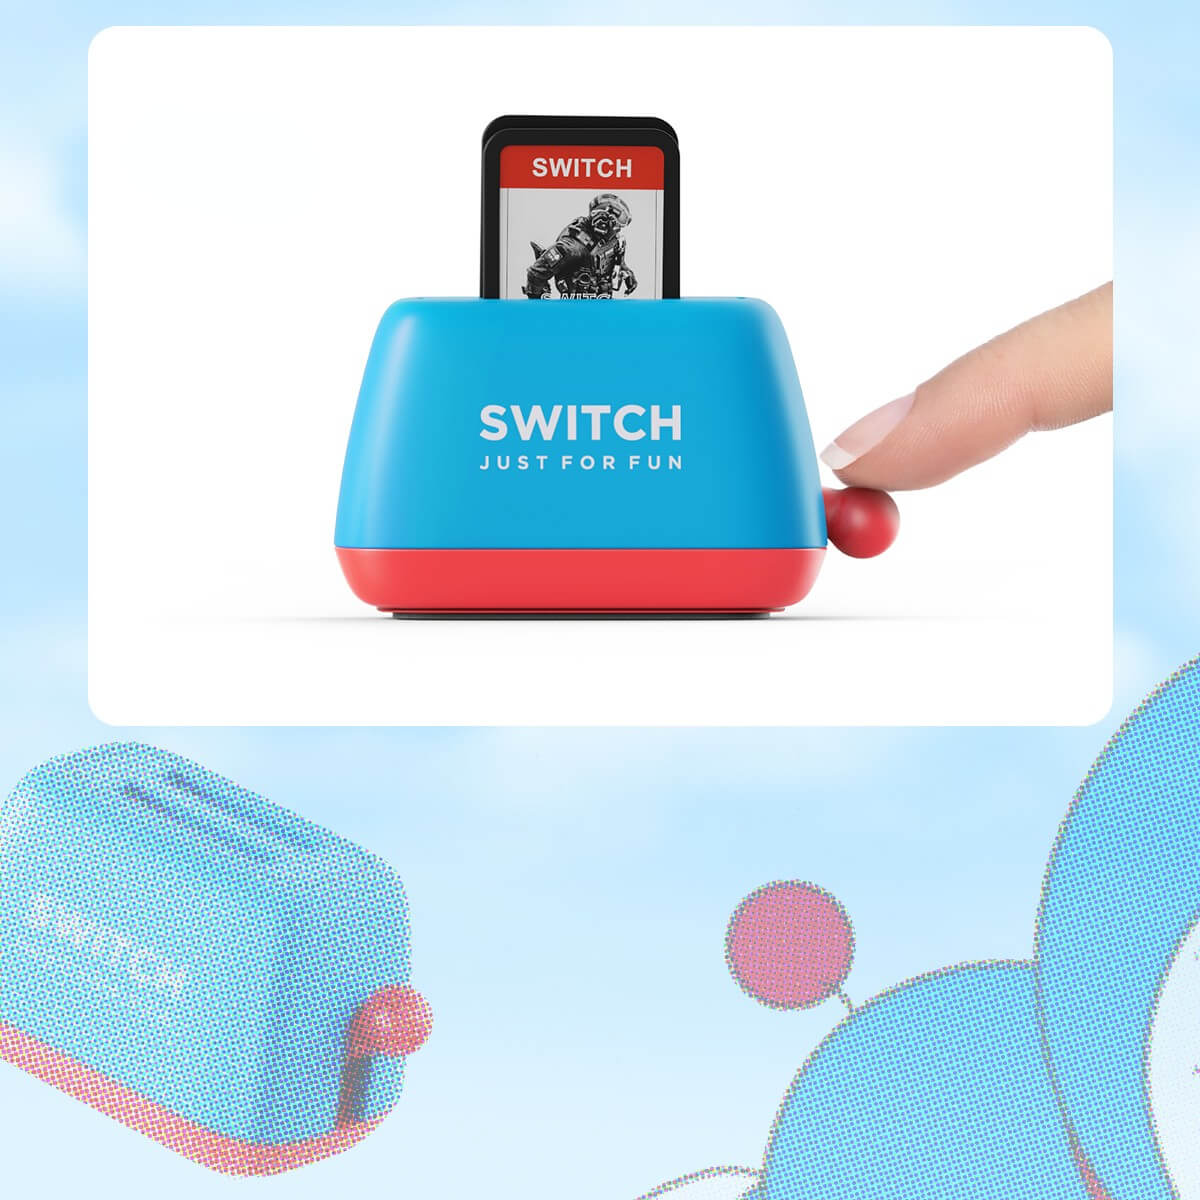 Toaster Nintendo Switch Game Card Storagebest, GameNEW TOWN BAZAAR